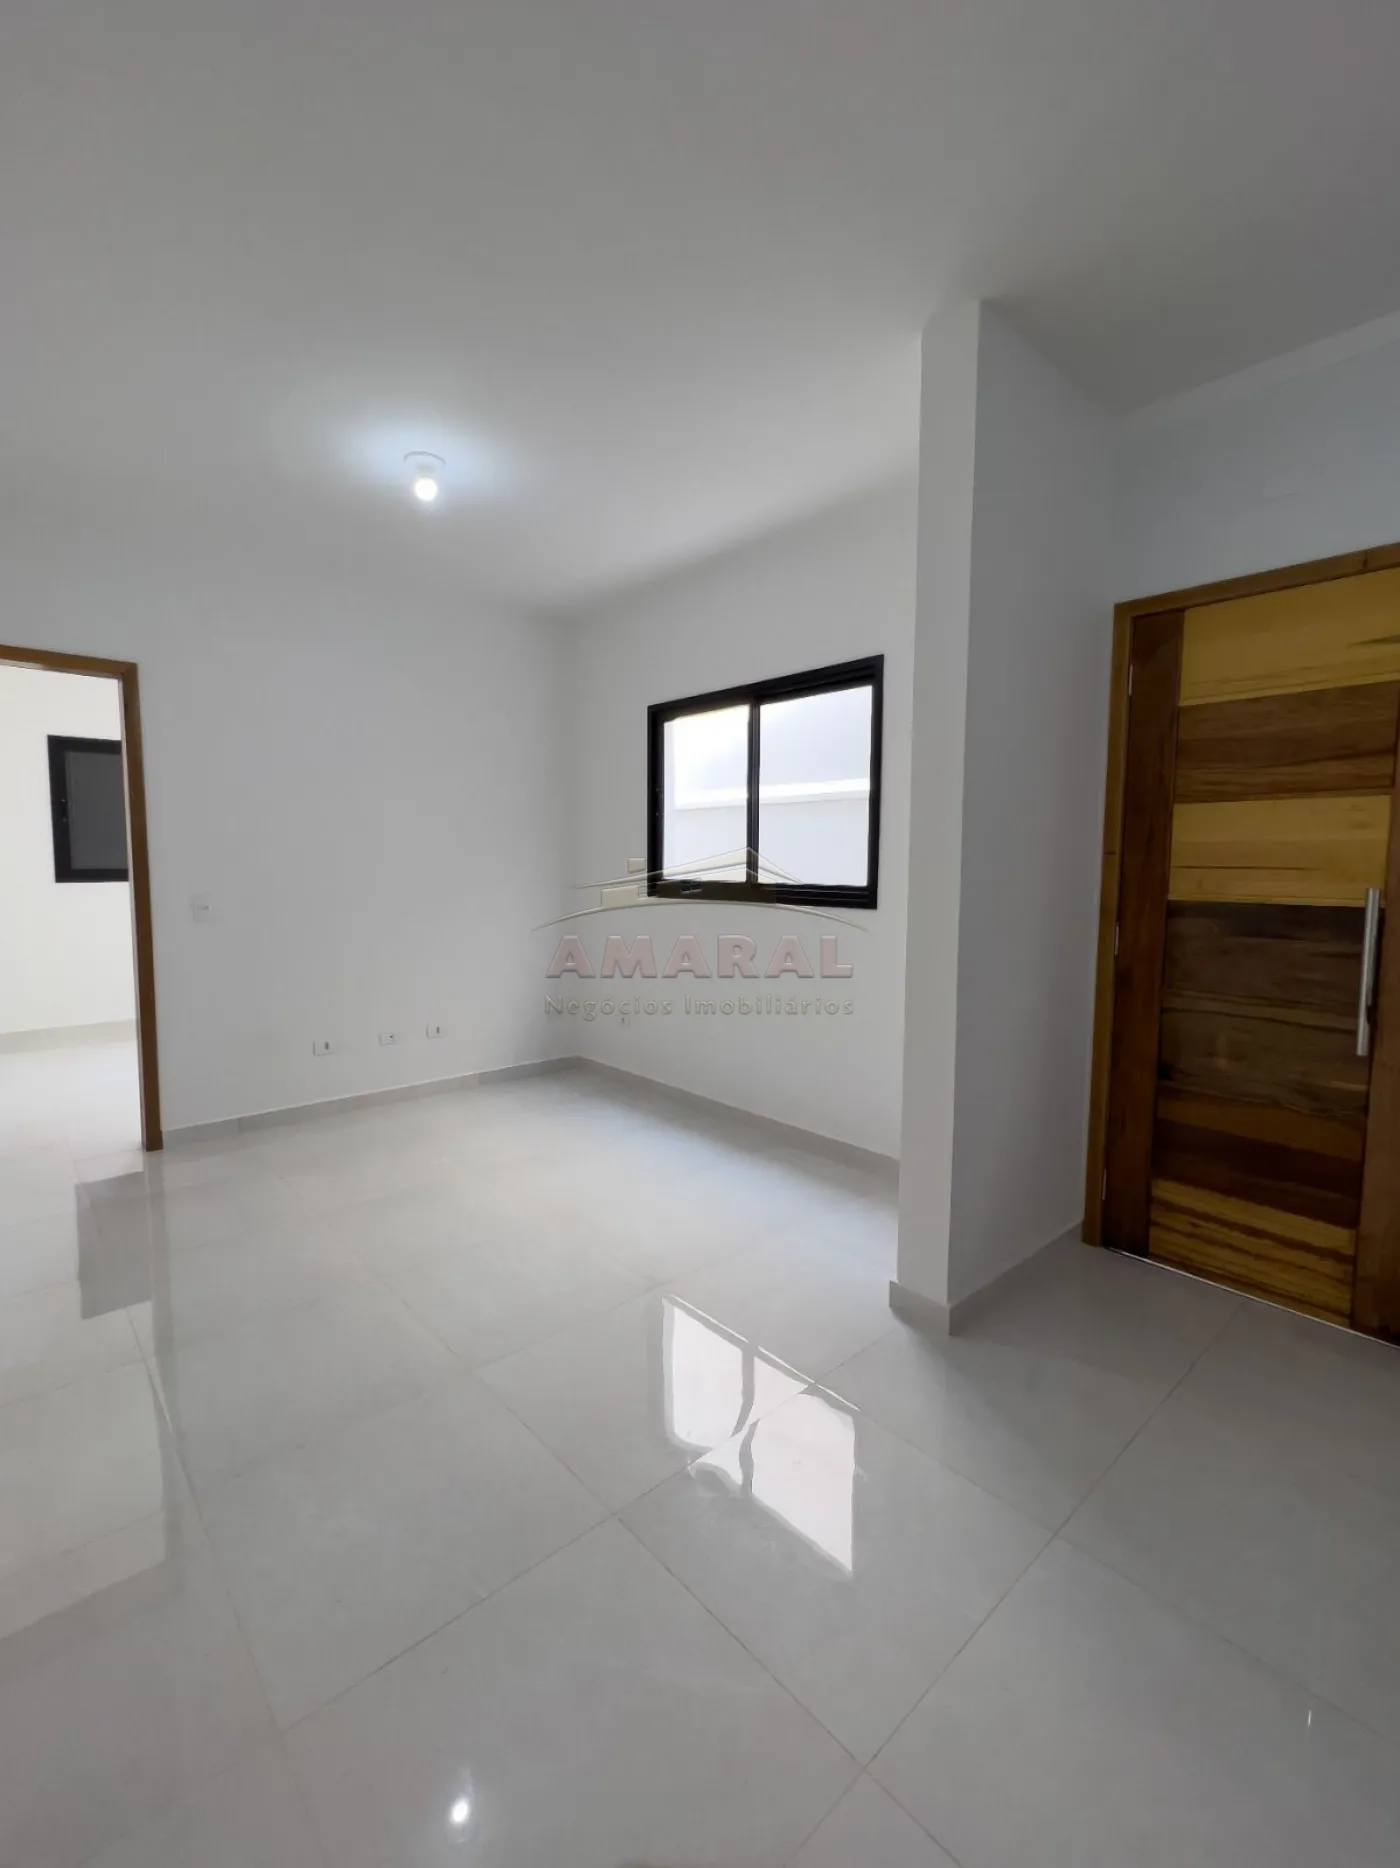 Comprar Casas / Térrea em Suzano R$ 590.000,00 - Foto 3